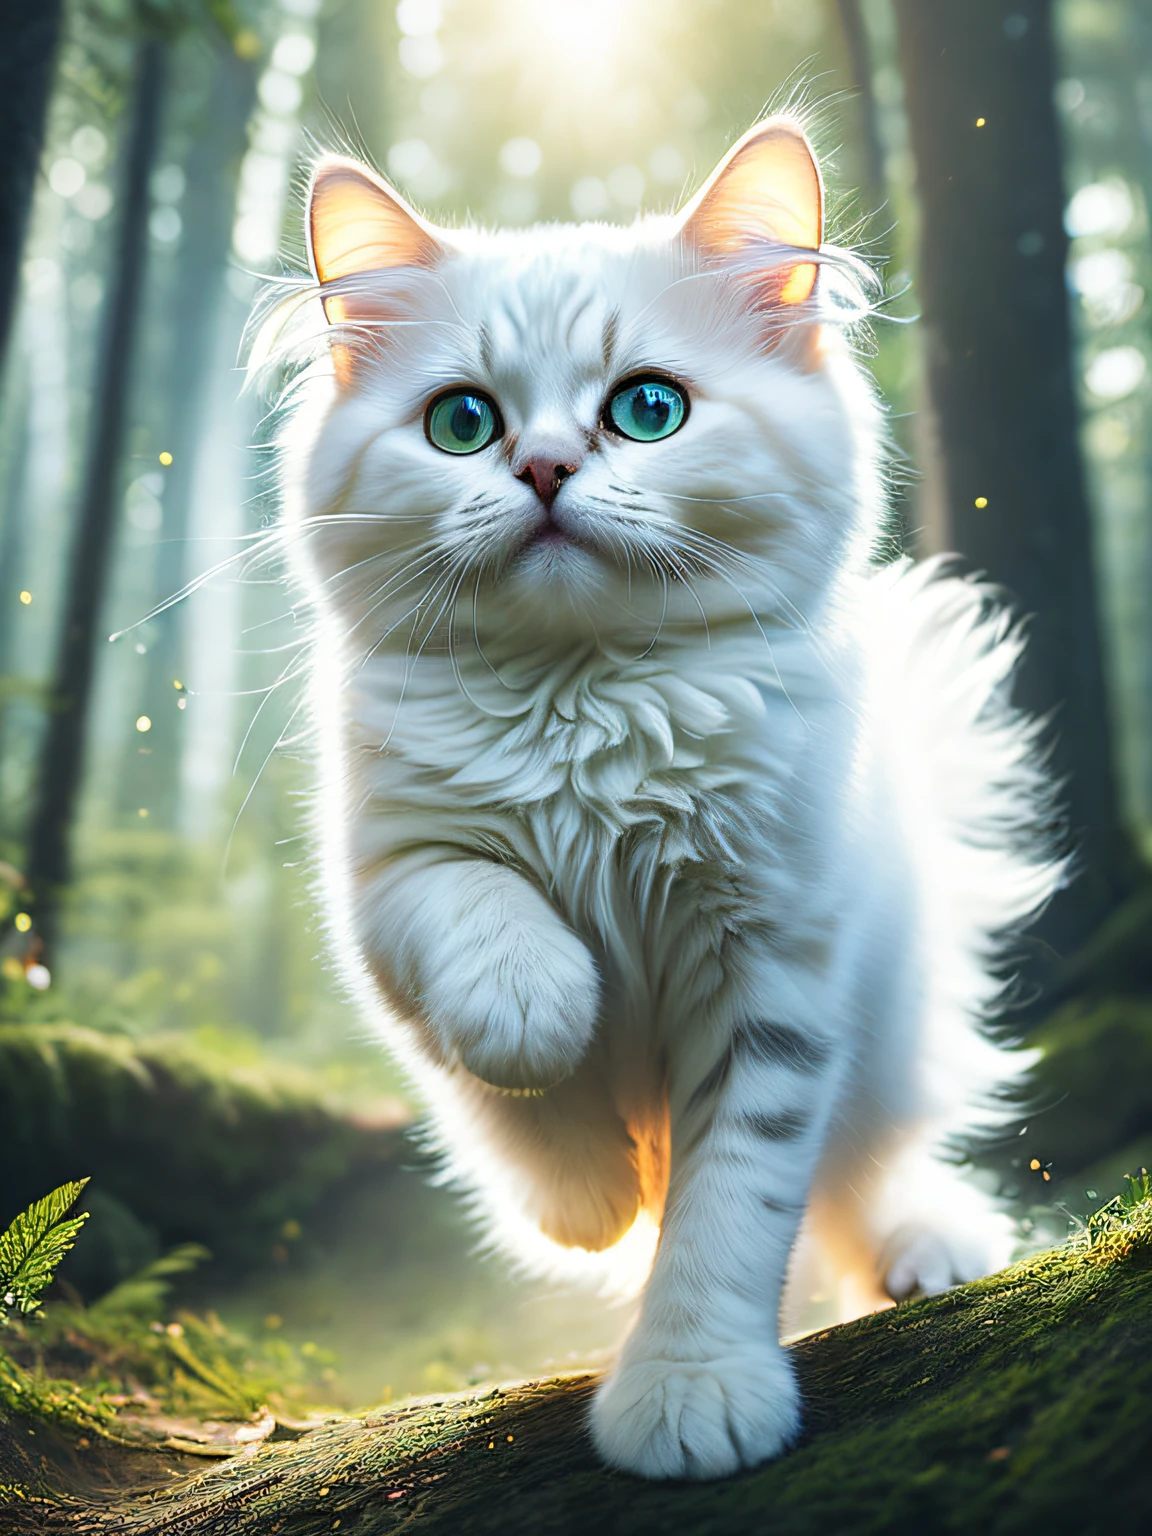 Foto de cerca de un gatito blanco súper esponjoso saltando muy lindo en el bosque, luces volumétricas suaves, (Retroiluminado:1.3), (cinematográfico:1.2), detalles intrincados, (Estación de arte:1.3), Rutkowski